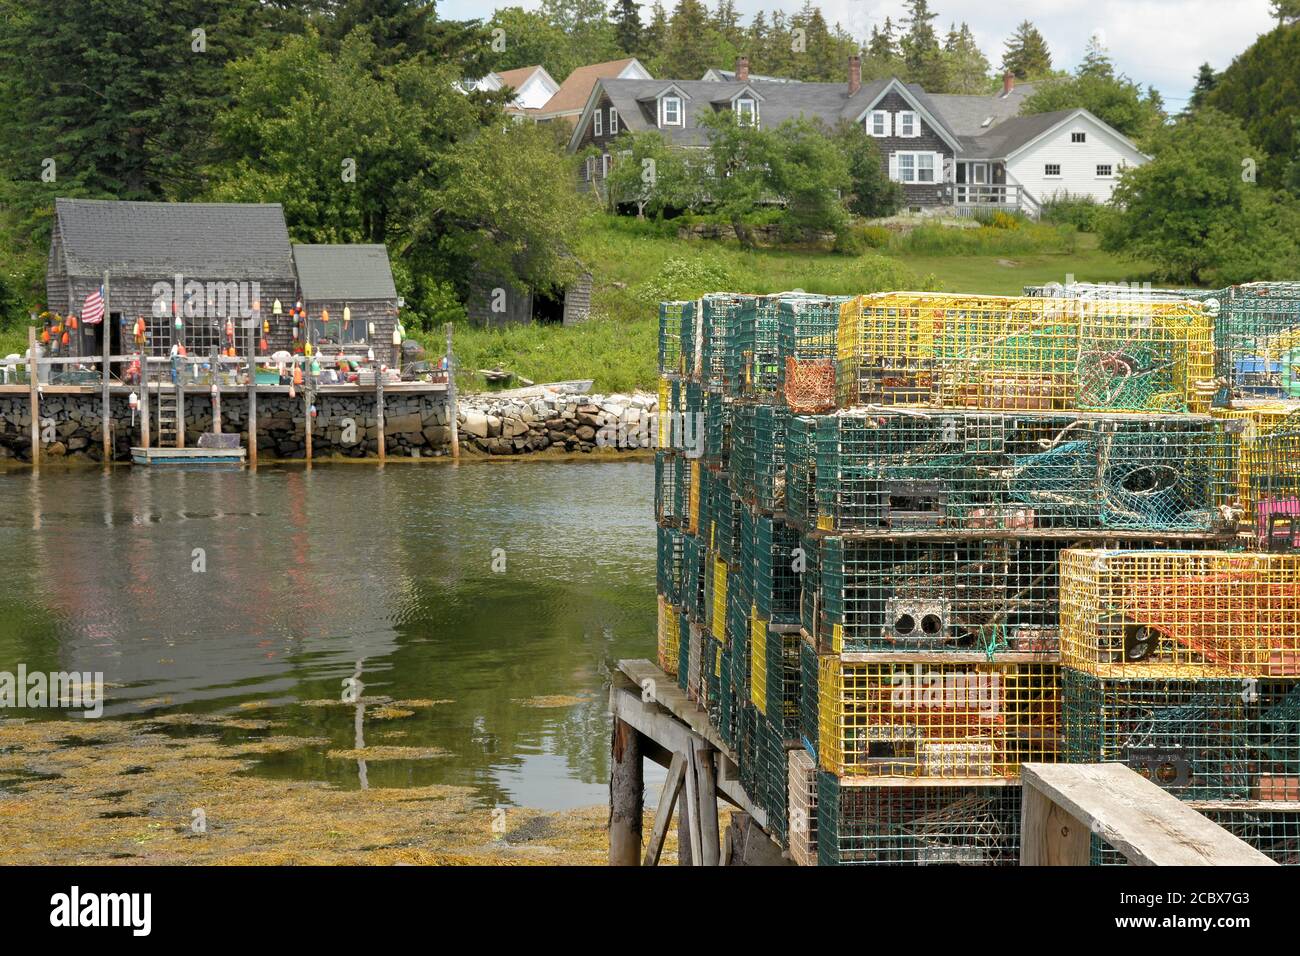 Pittoresco villaggio di pescatori di Port Clyde, Maine. Trappole di aragosta accatastate sul molo nel porto e zacca di aragosta decorata con boe colorate. Foto Stock